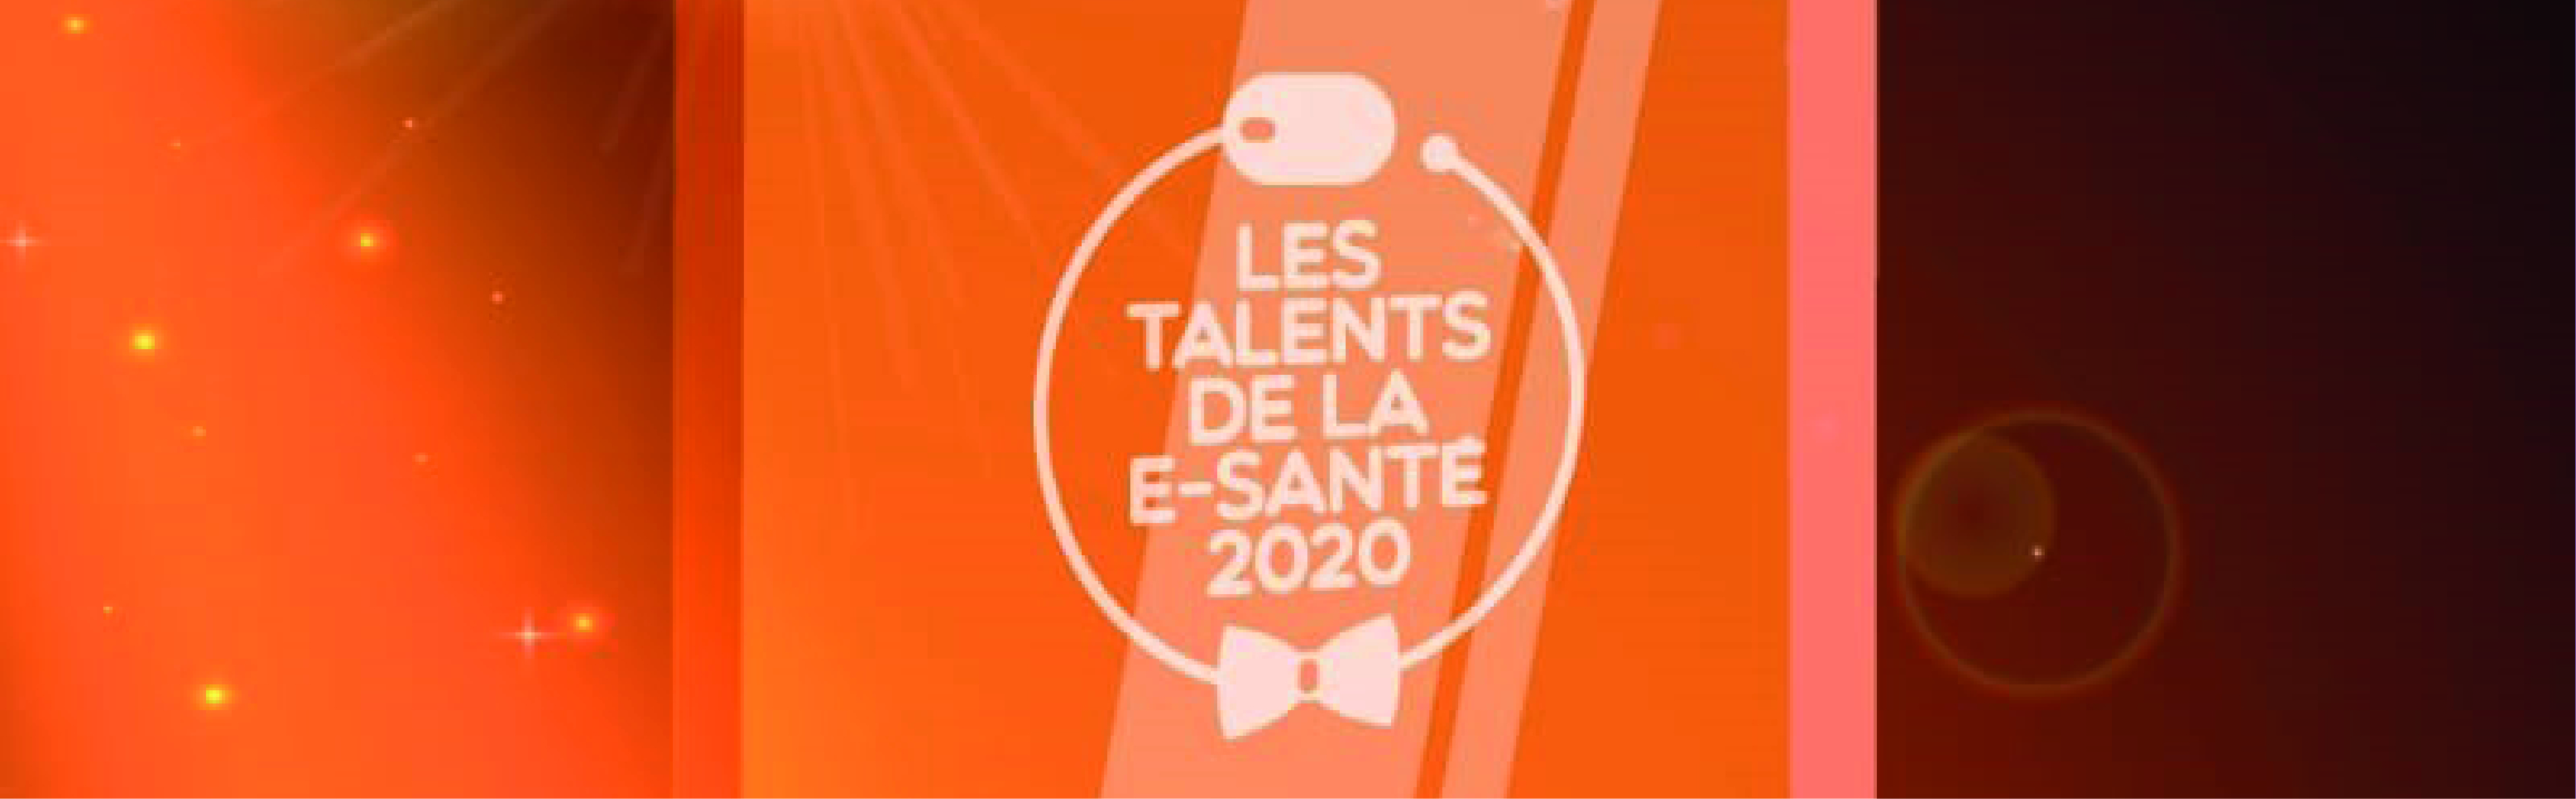 Les talents de la e-santé 2020